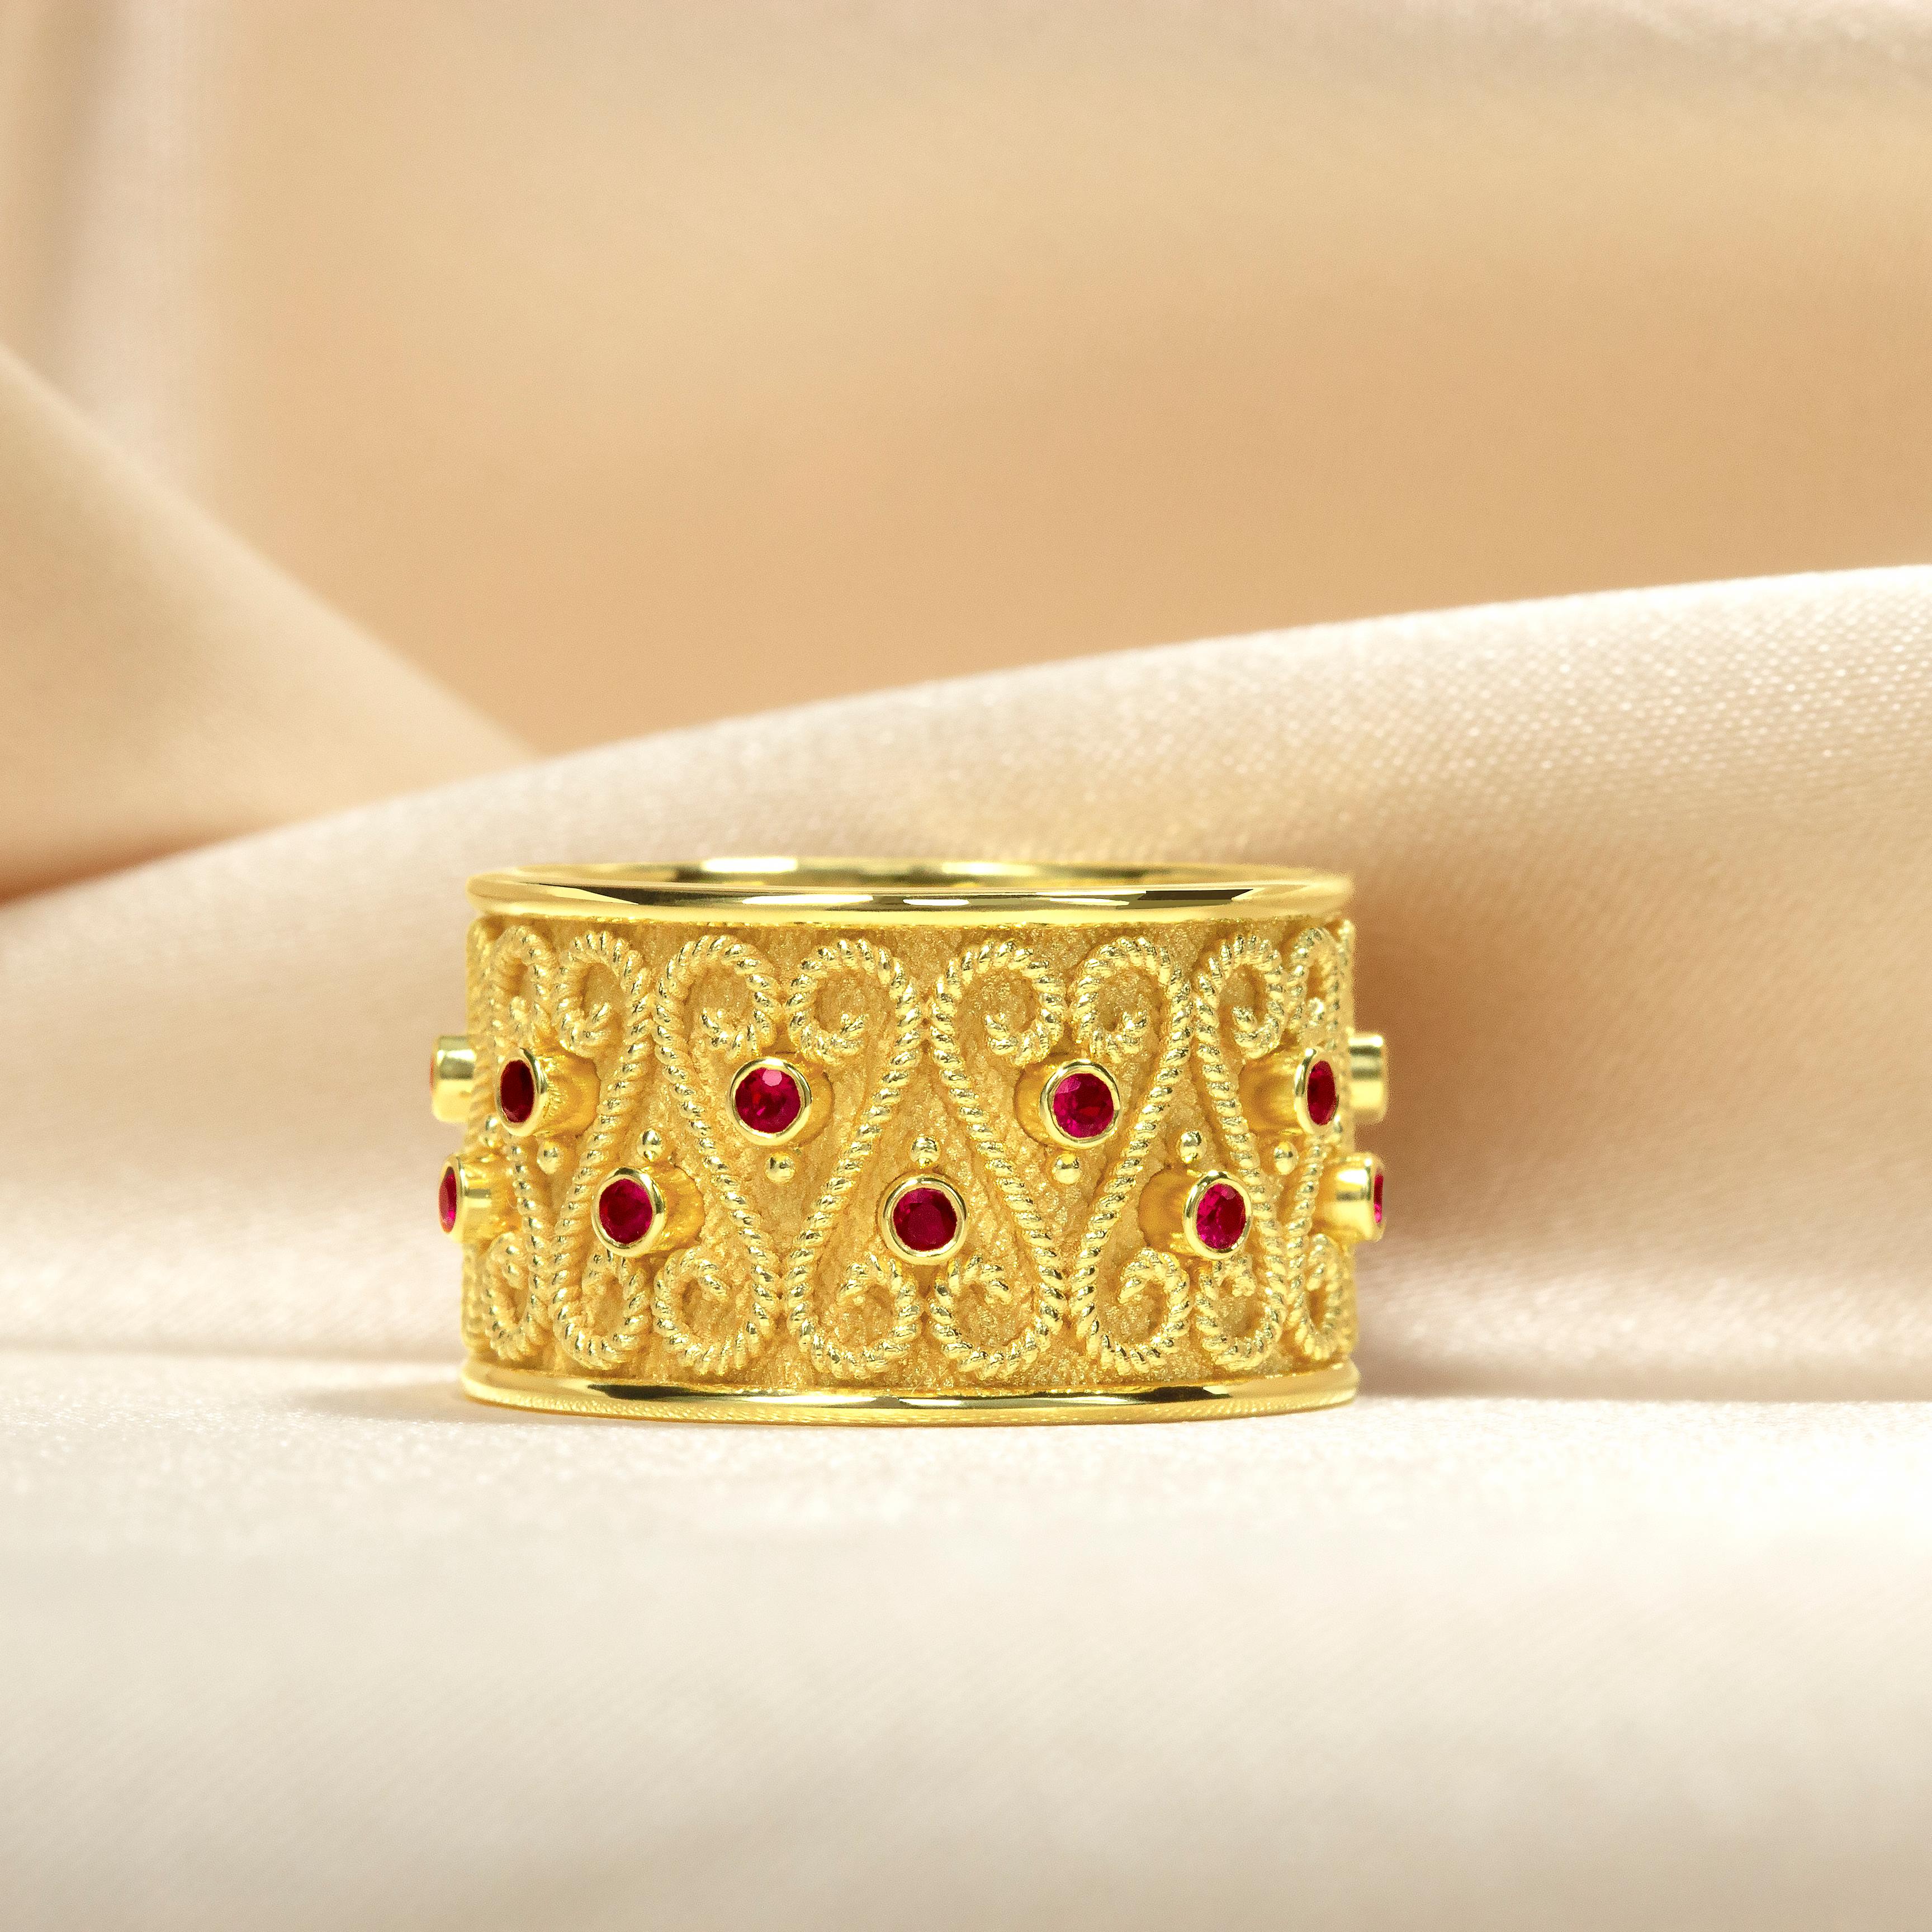 Dieser elegante, mit schimmernden Rubinen besetzte Goldring ist die perfekte Wahl für eine anspruchsvolle Frau. Sie ist aus luxuriösen Materialien gefertigt und verleiht jeder Garderobe einen Hauch von Opulenz. Dieser wunderschöne Ring ist ein